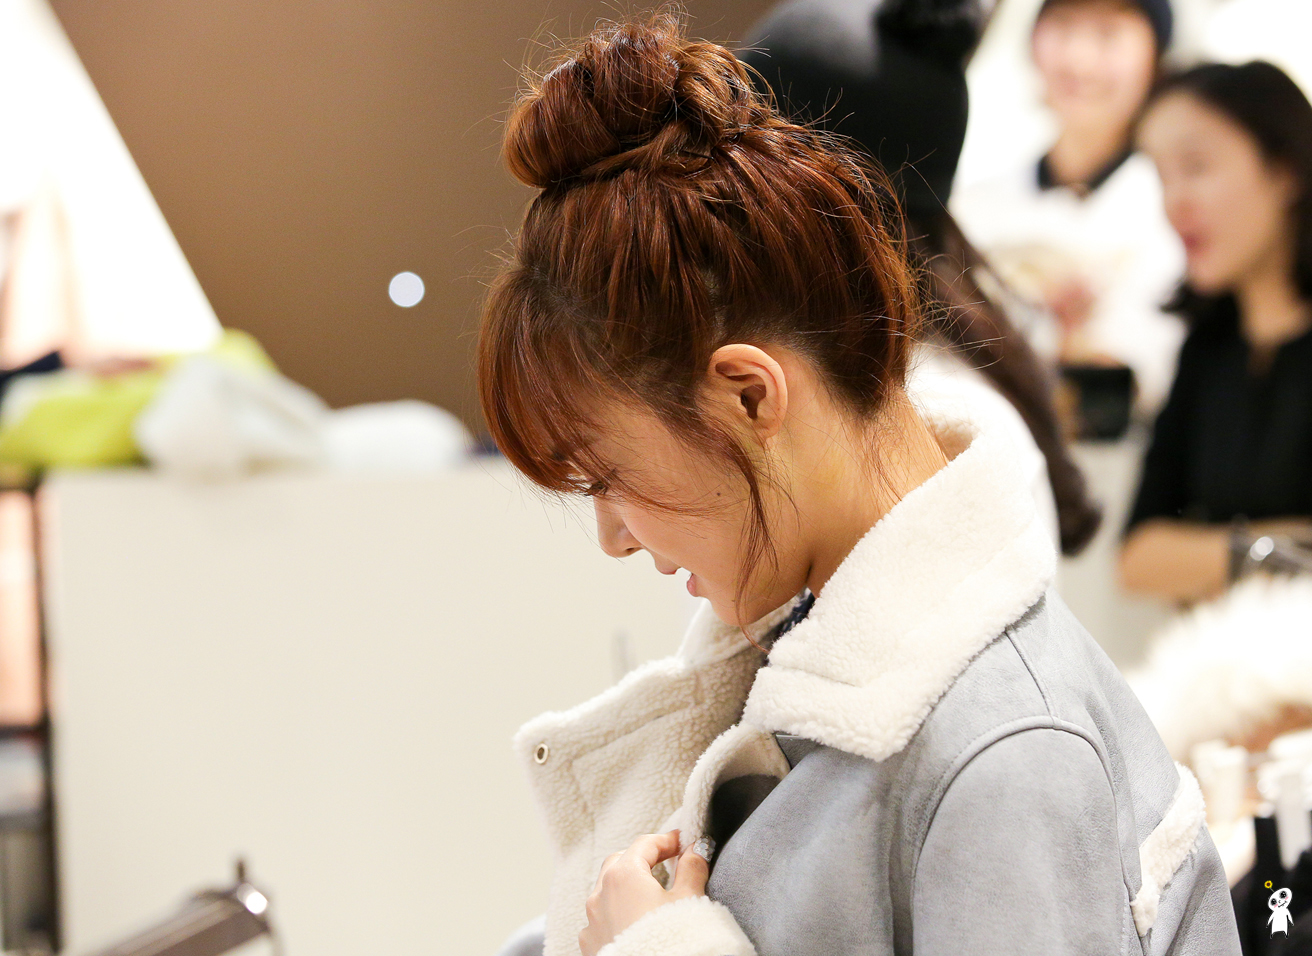 [PIC][28-11-2013]Tiffany ghé thăm cửa hàng "QUA" ở Hyundai Department Store vào trưa nay - Page 3 2204664052980CAB030190